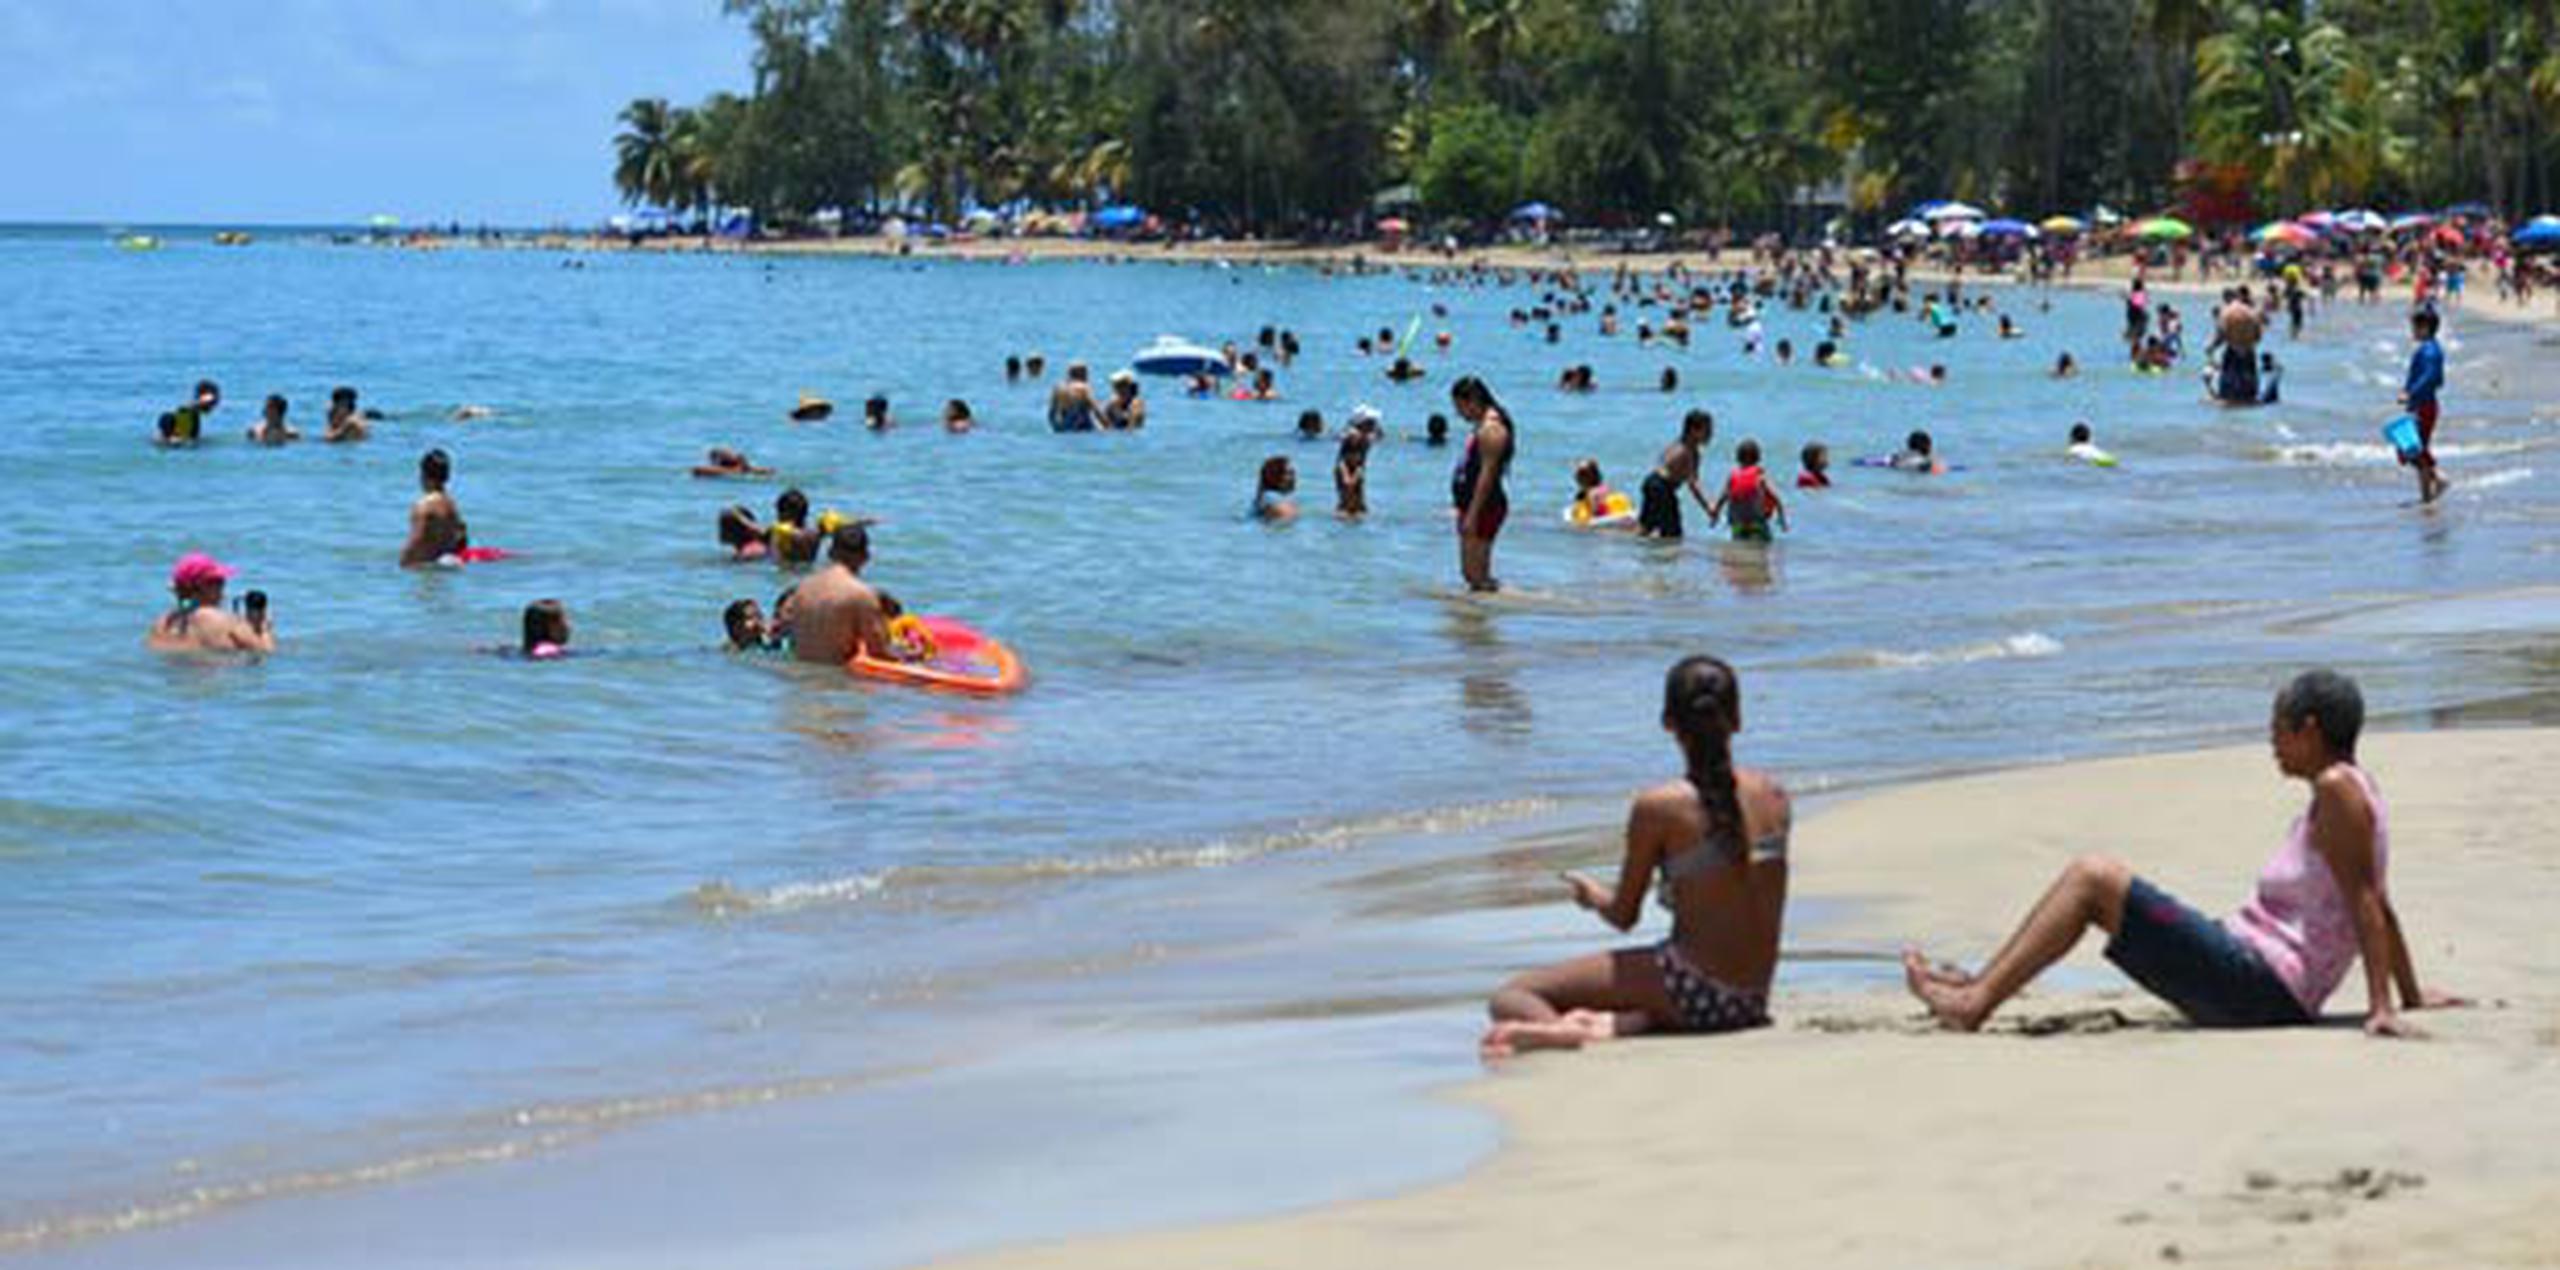 En su página web, la JCA clasifica la calidad de agua con banderas. Las playas con bandera verde se recomiendan para uso de bañistas,  la bandera amarilla advierte que las aguas no se recomiendan para inmersión. (luis.alcaladelolmo@gfrmedia.com)